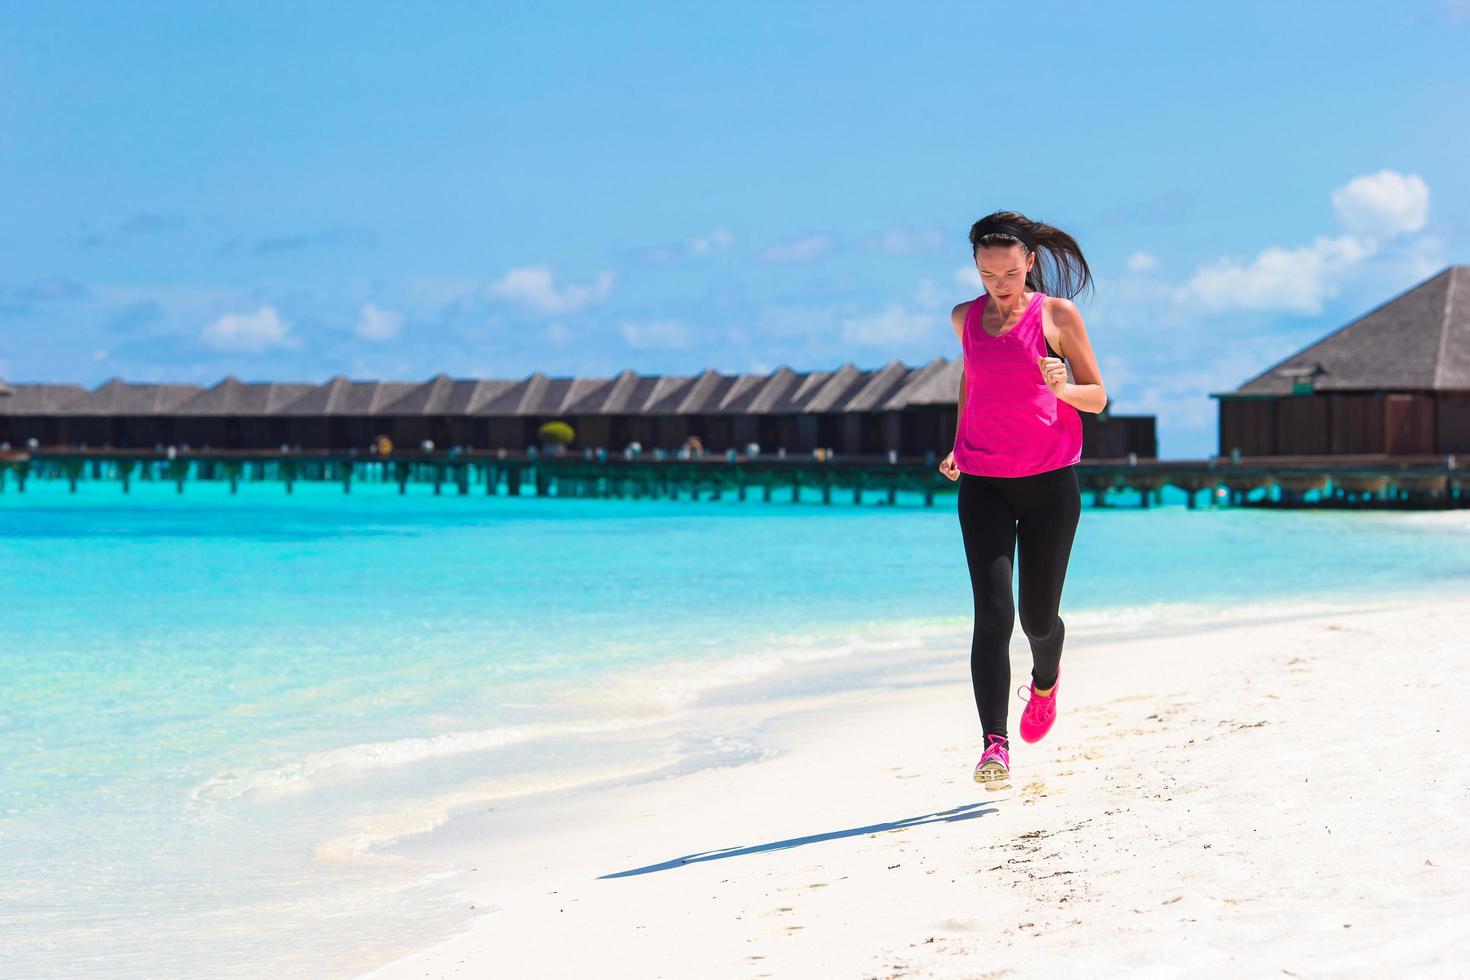 maldivas, sul da ásia, 2020 - mulher correndo em um resort de praia foto